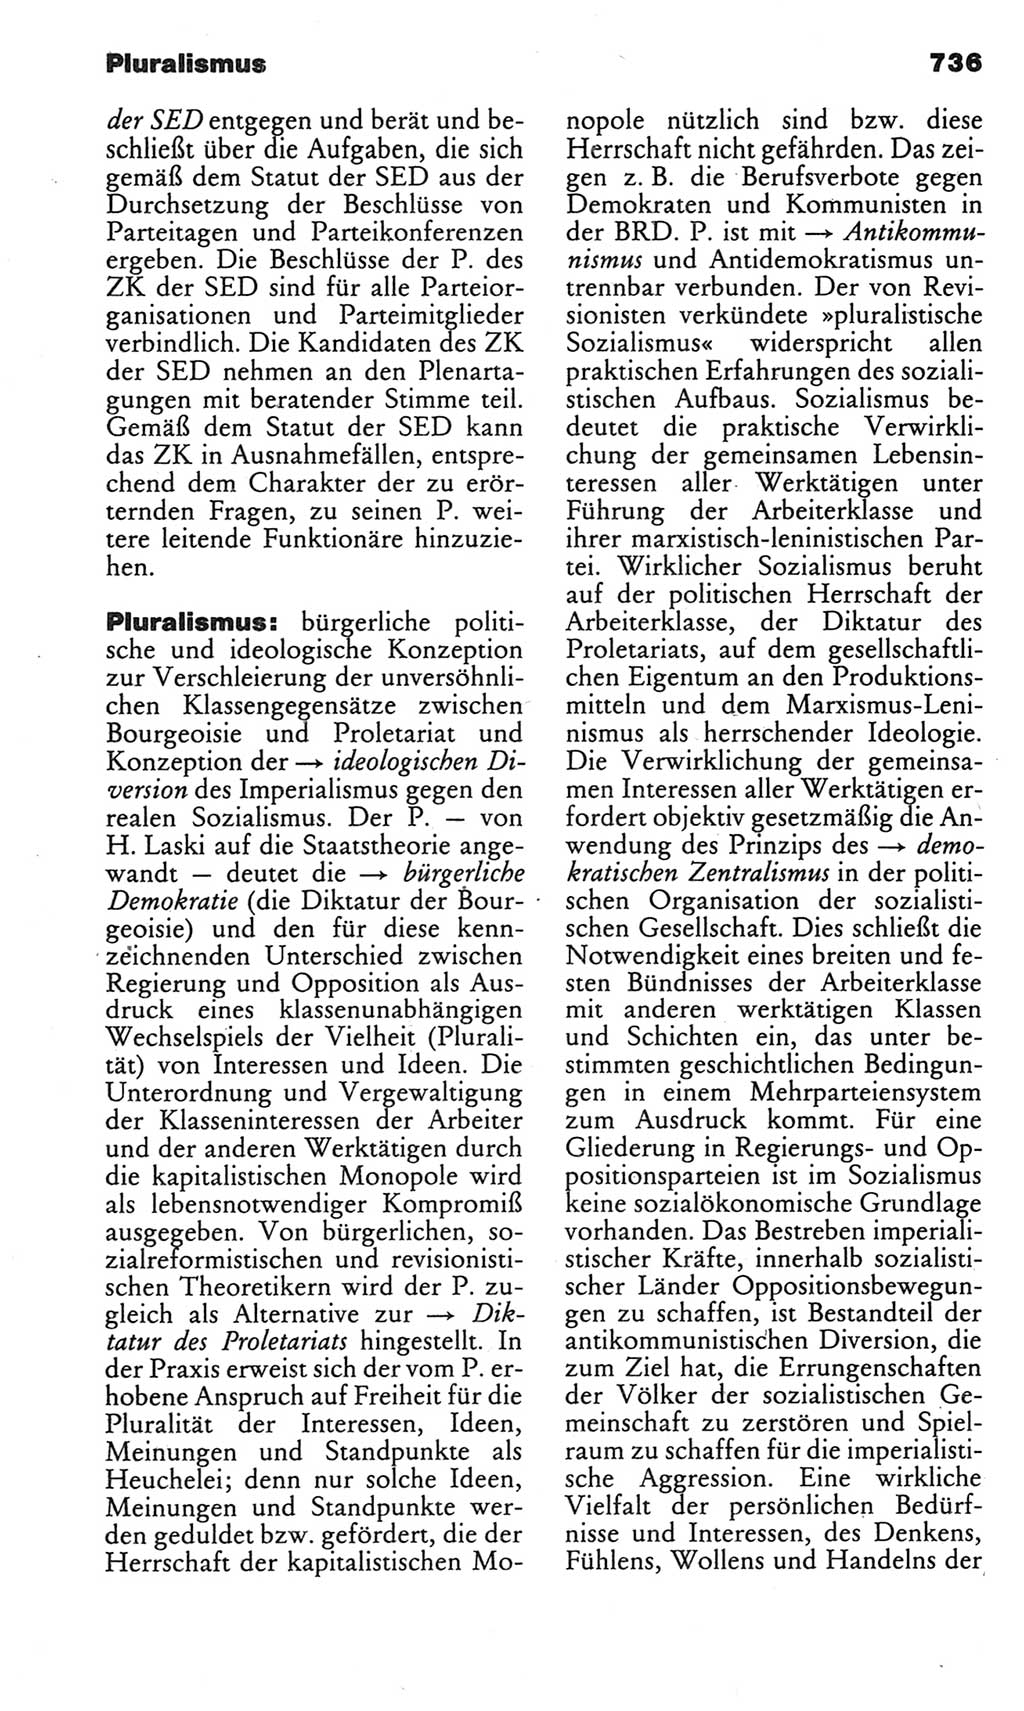 Kleines politisches Wörterbuch [Deutsche Demokratische Republik (DDR)] 1983, Seite 736 (Kl. pol. Wb. DDR 1983, S. 736)